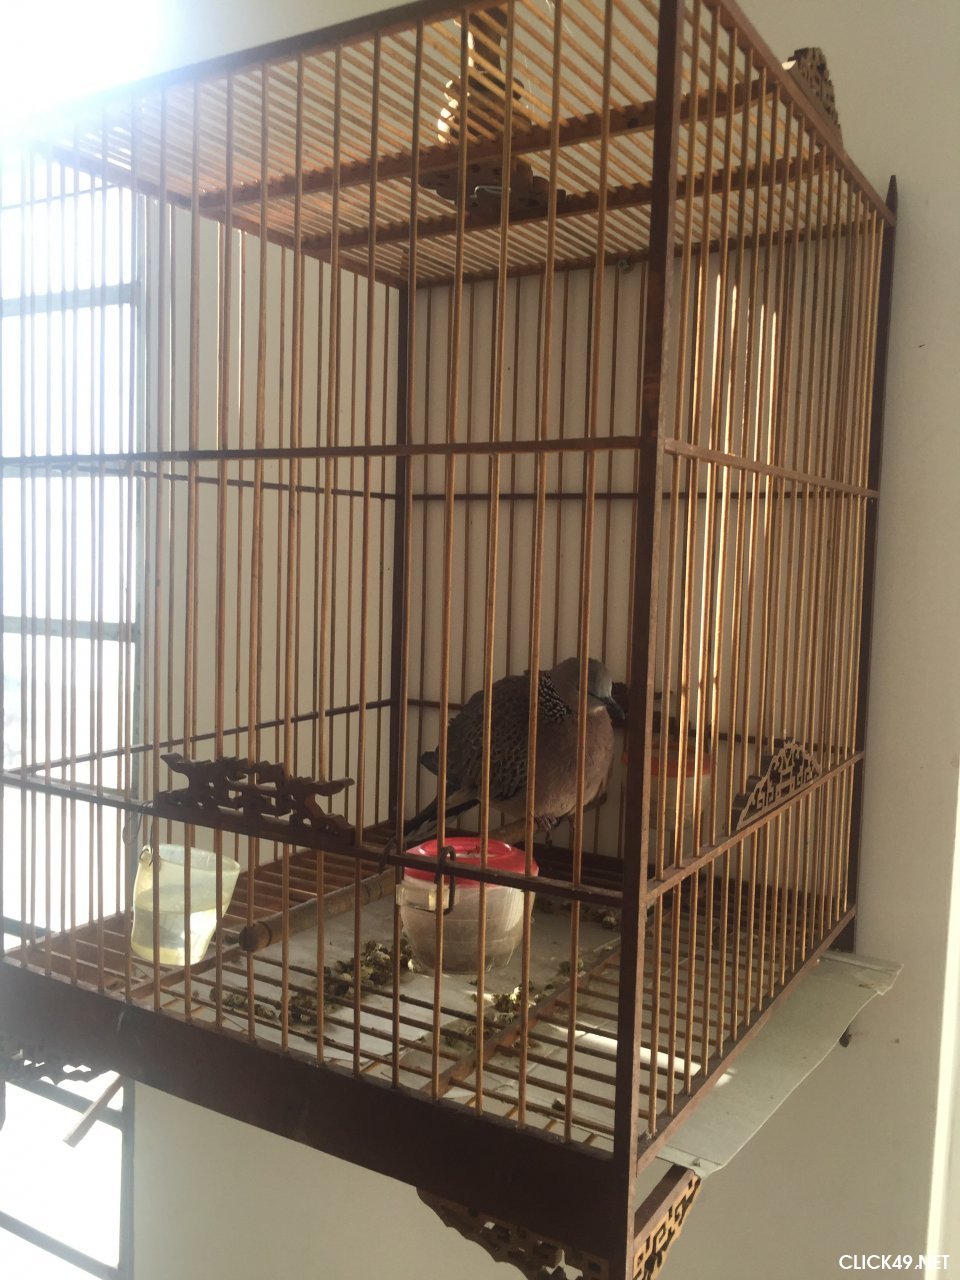 Kinh nghiệm nuôi và chăm sóc chim cu gáy - Thú cảnh